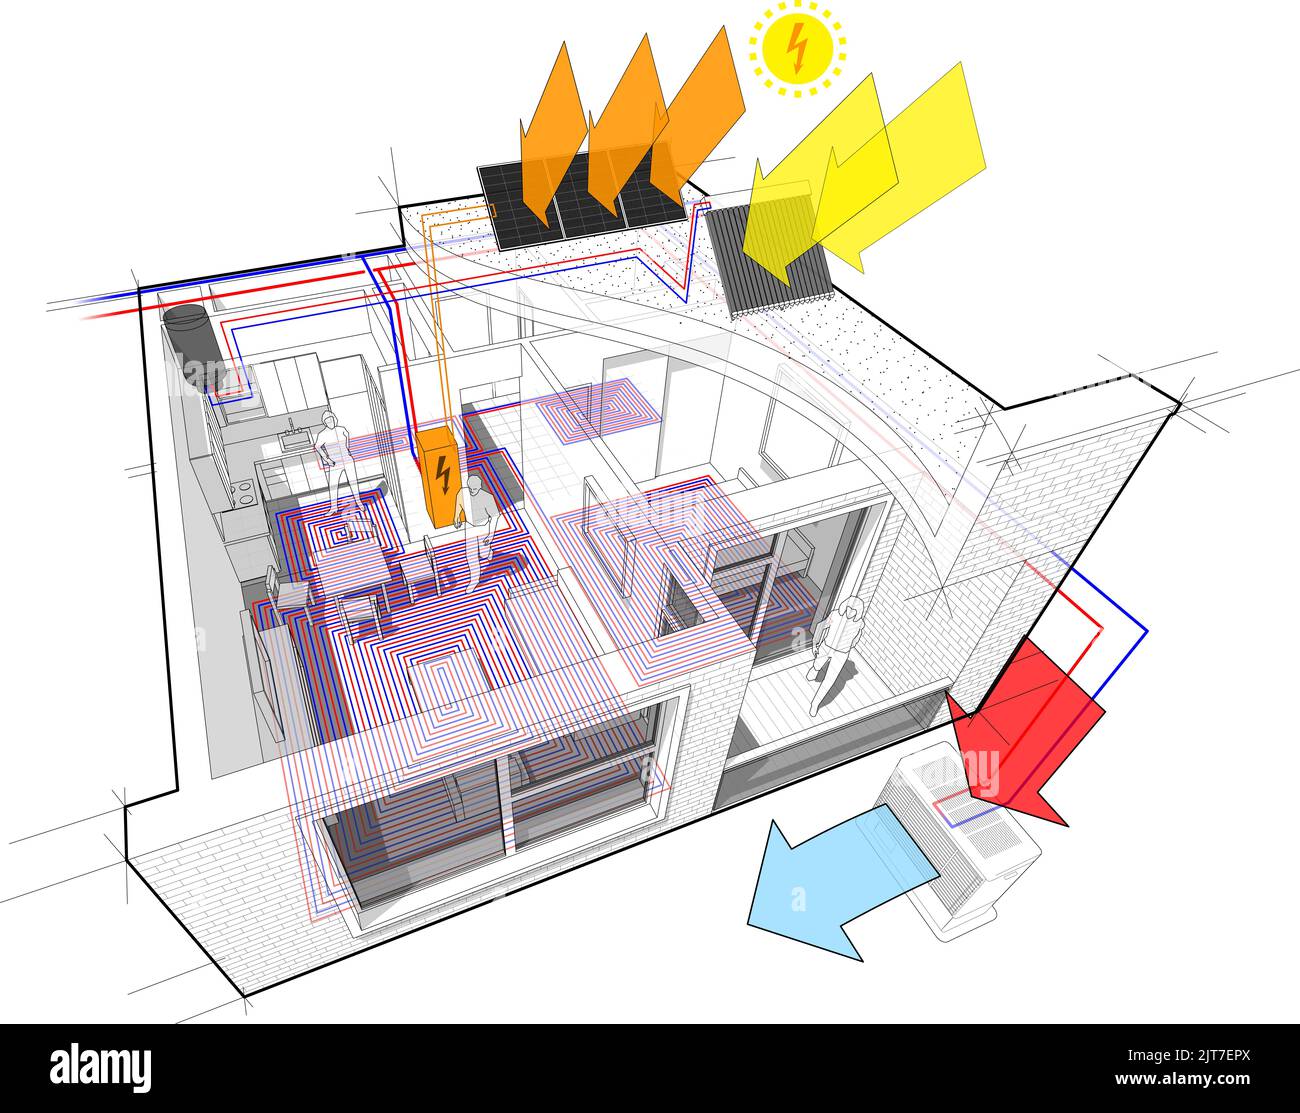 Apartment-Diagramm mit Fußbodenheizung und Wärmepumpe und Photovoltaik-und Sonnenkollektoren Stockfoto